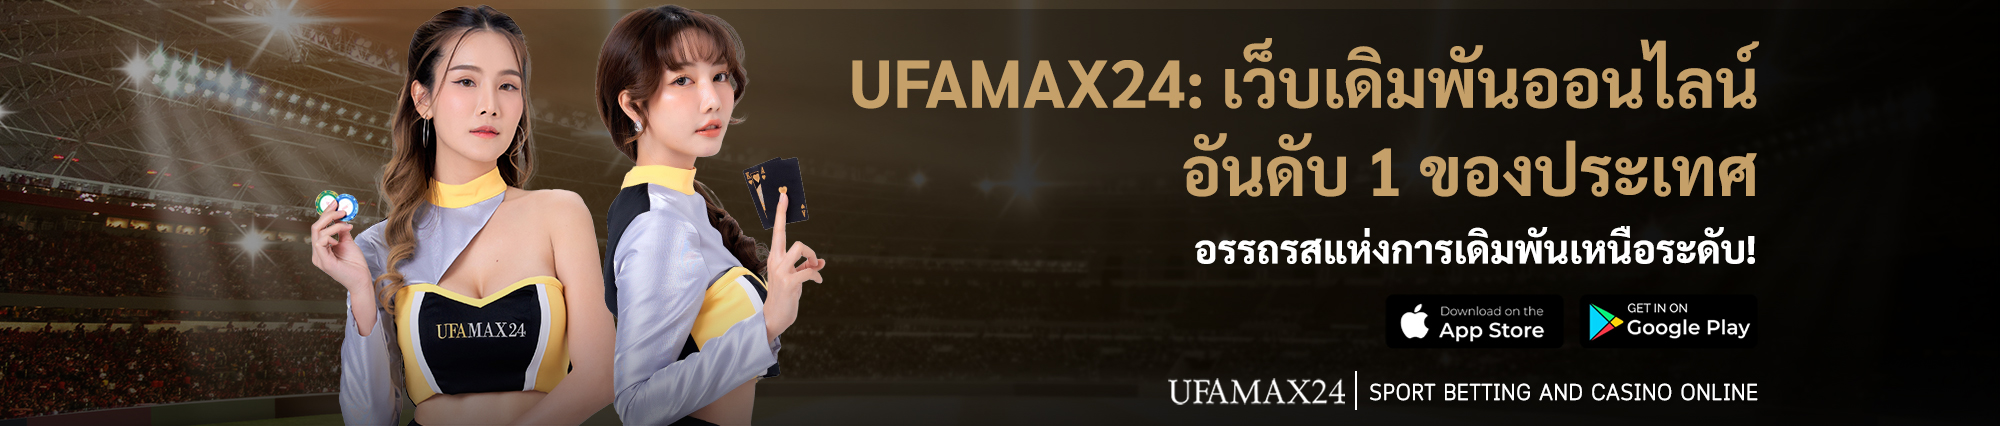 ufamax24 banner1